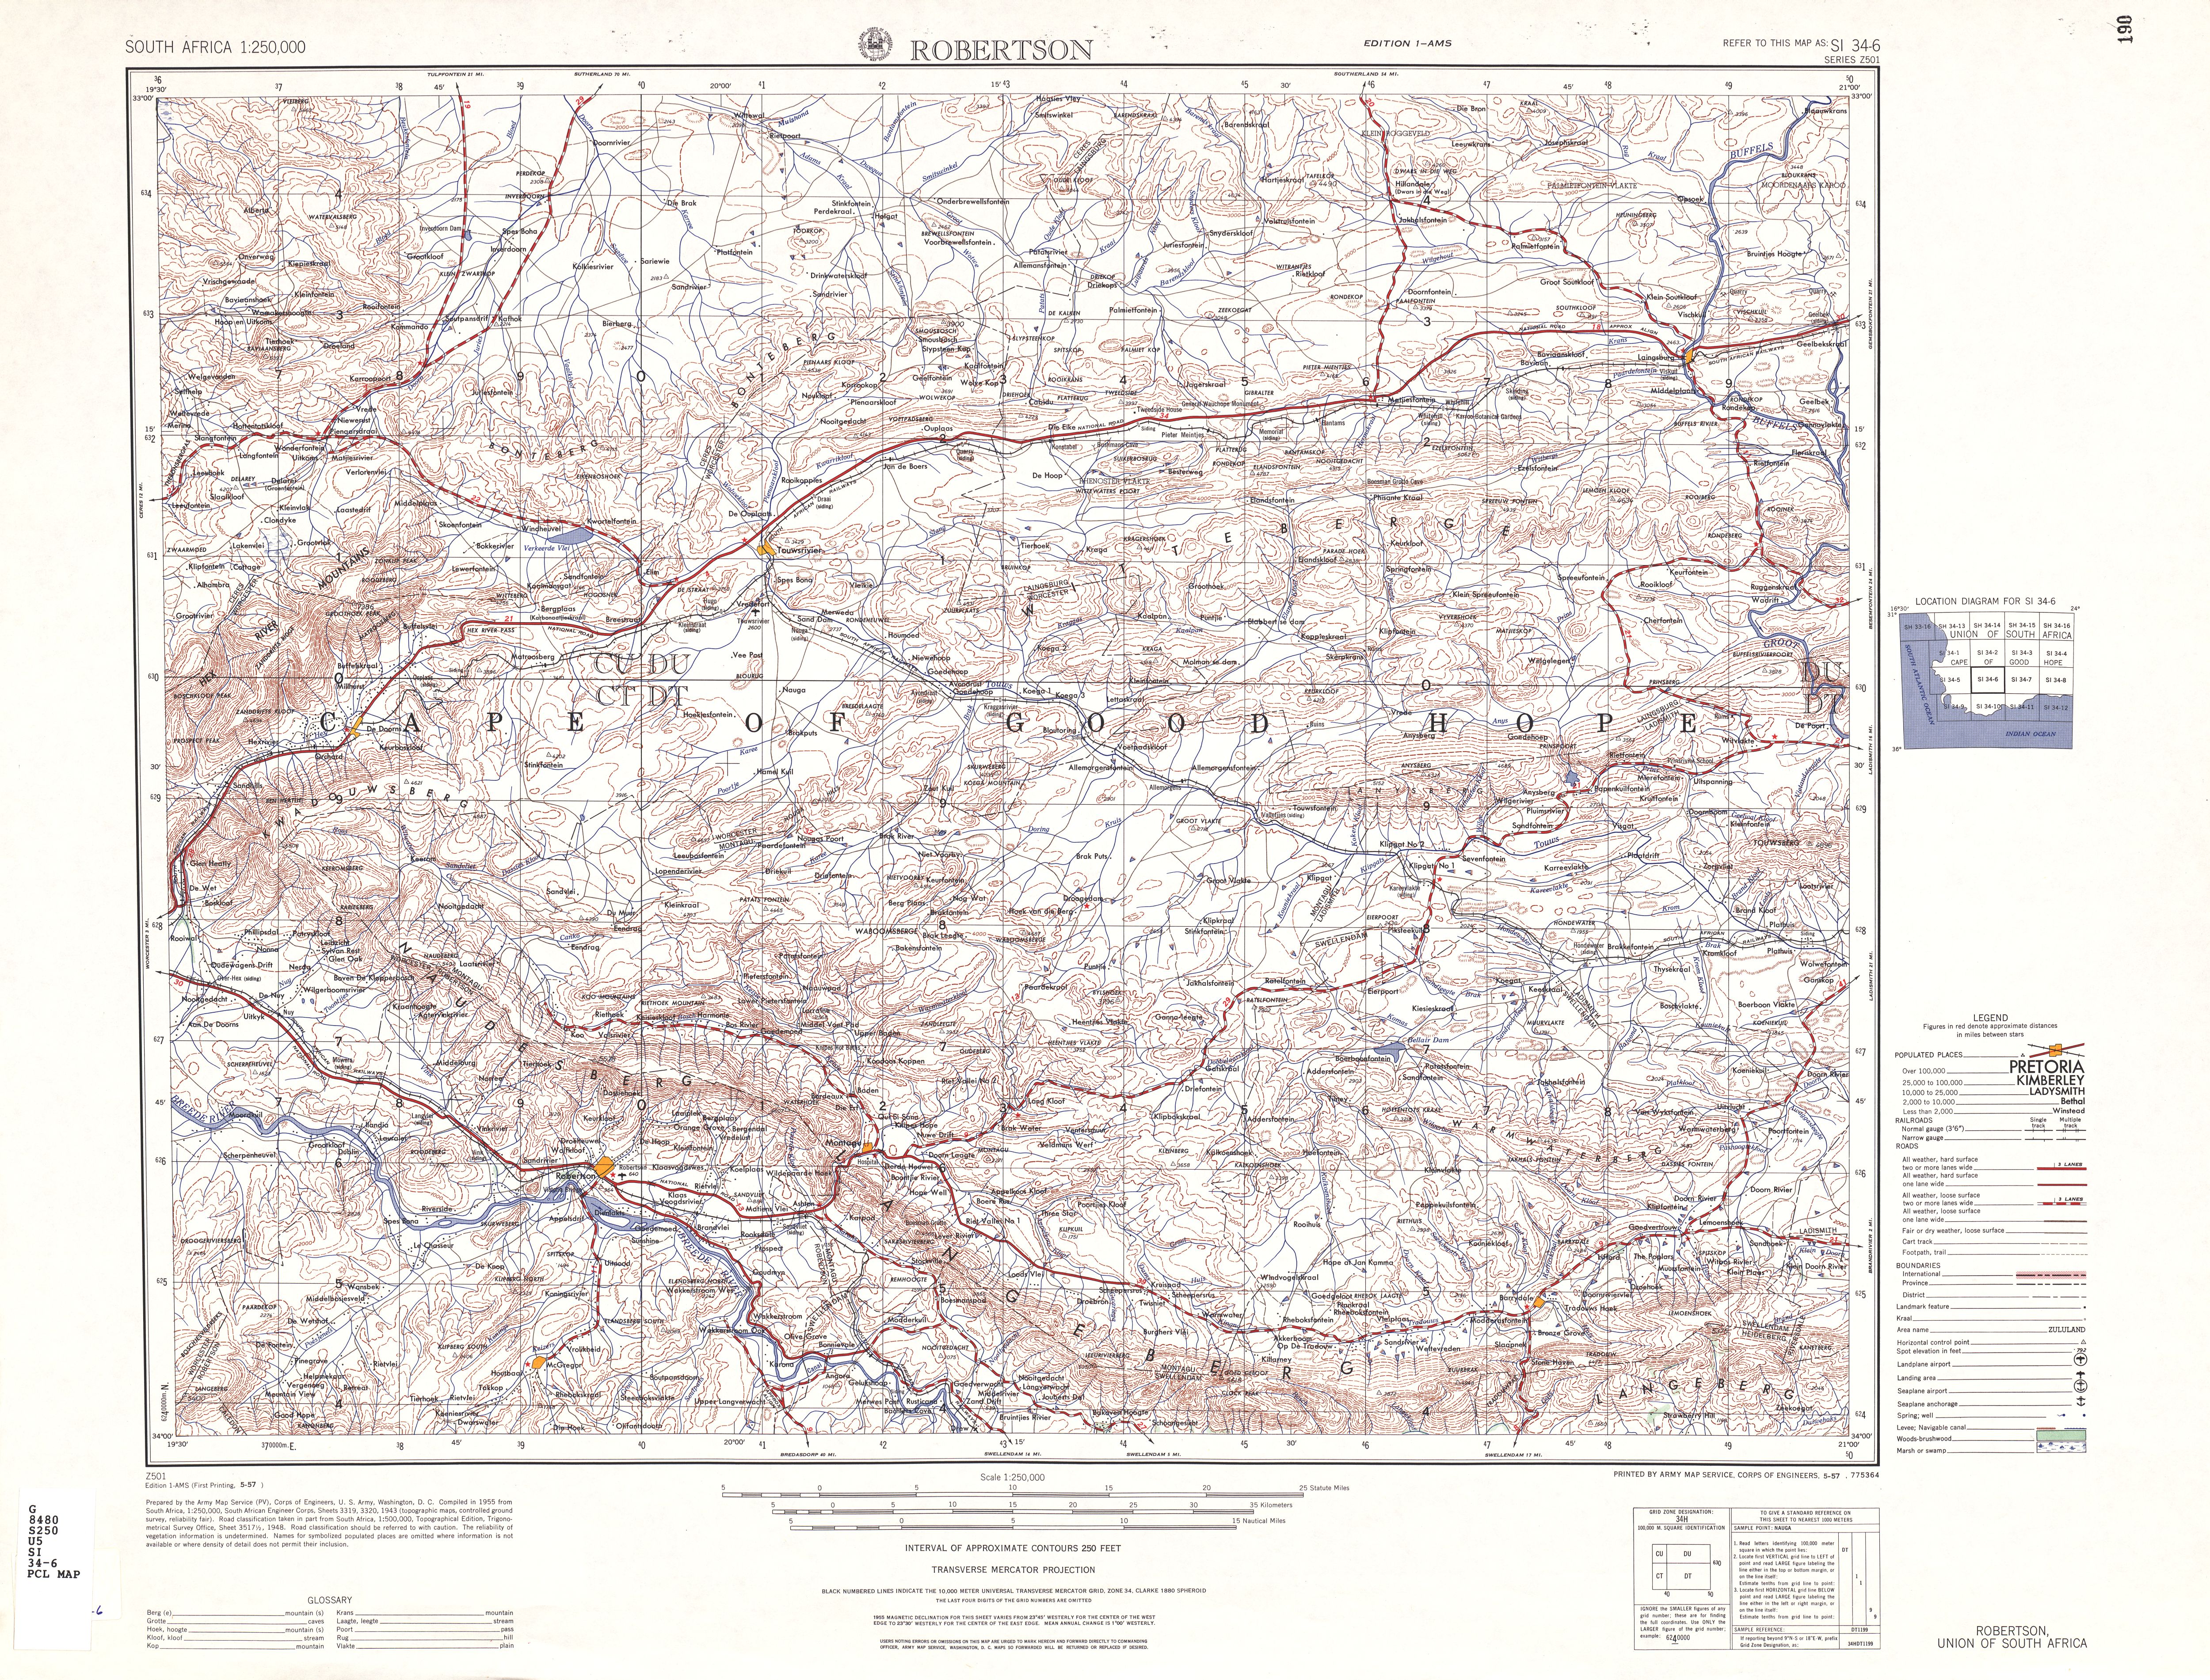 Hoja Robertson del Mapa Topográfico de África Meridional 1954